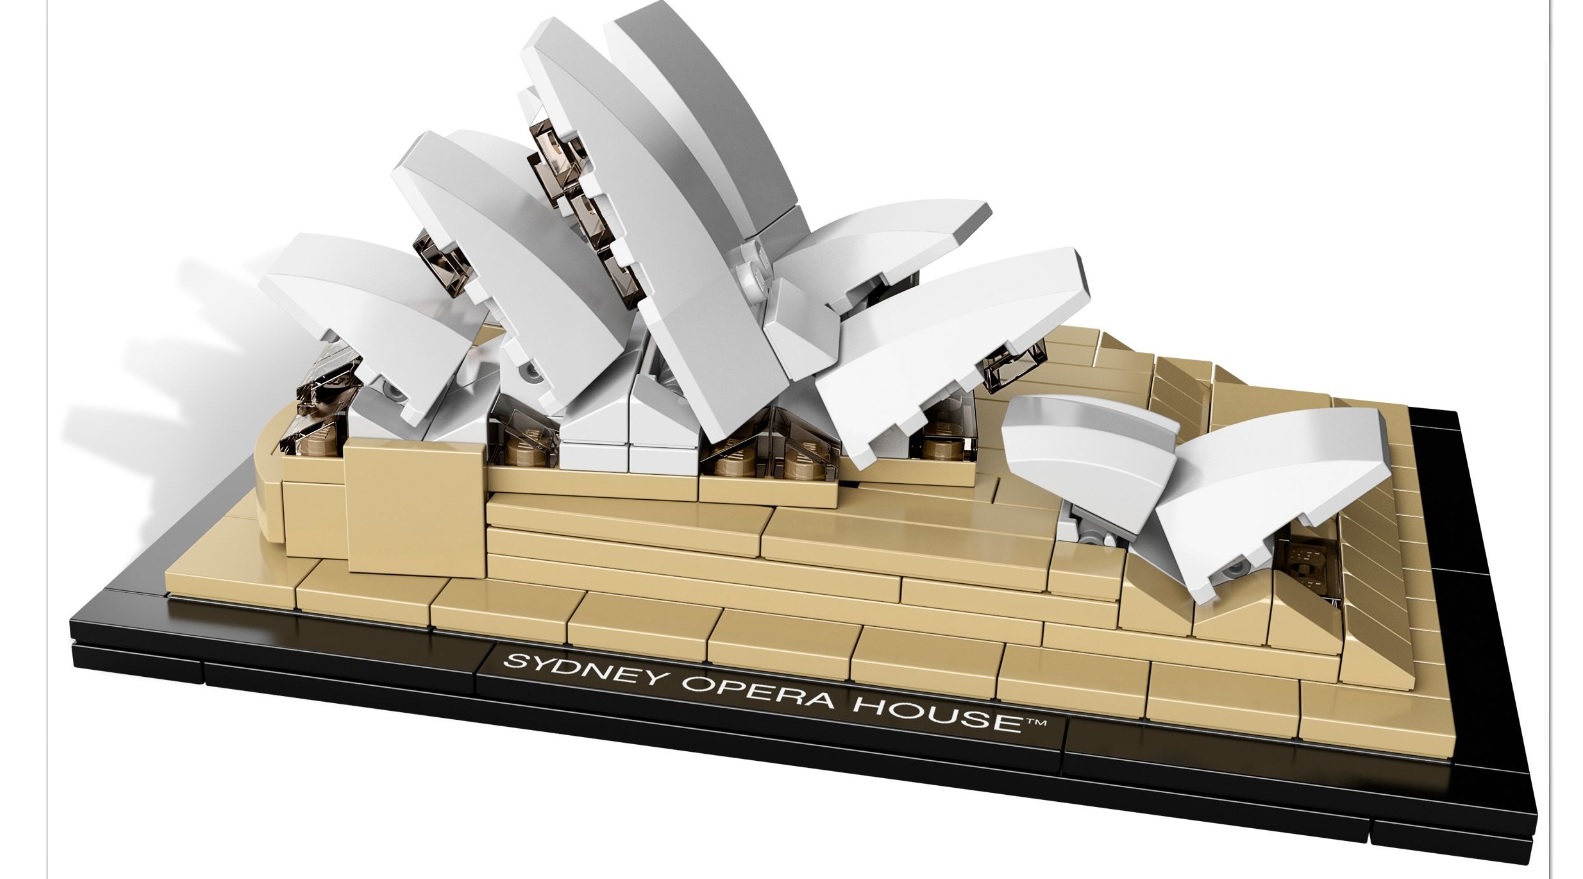 LEGO ARQUITETURA - Ópera de Sidney - 21012